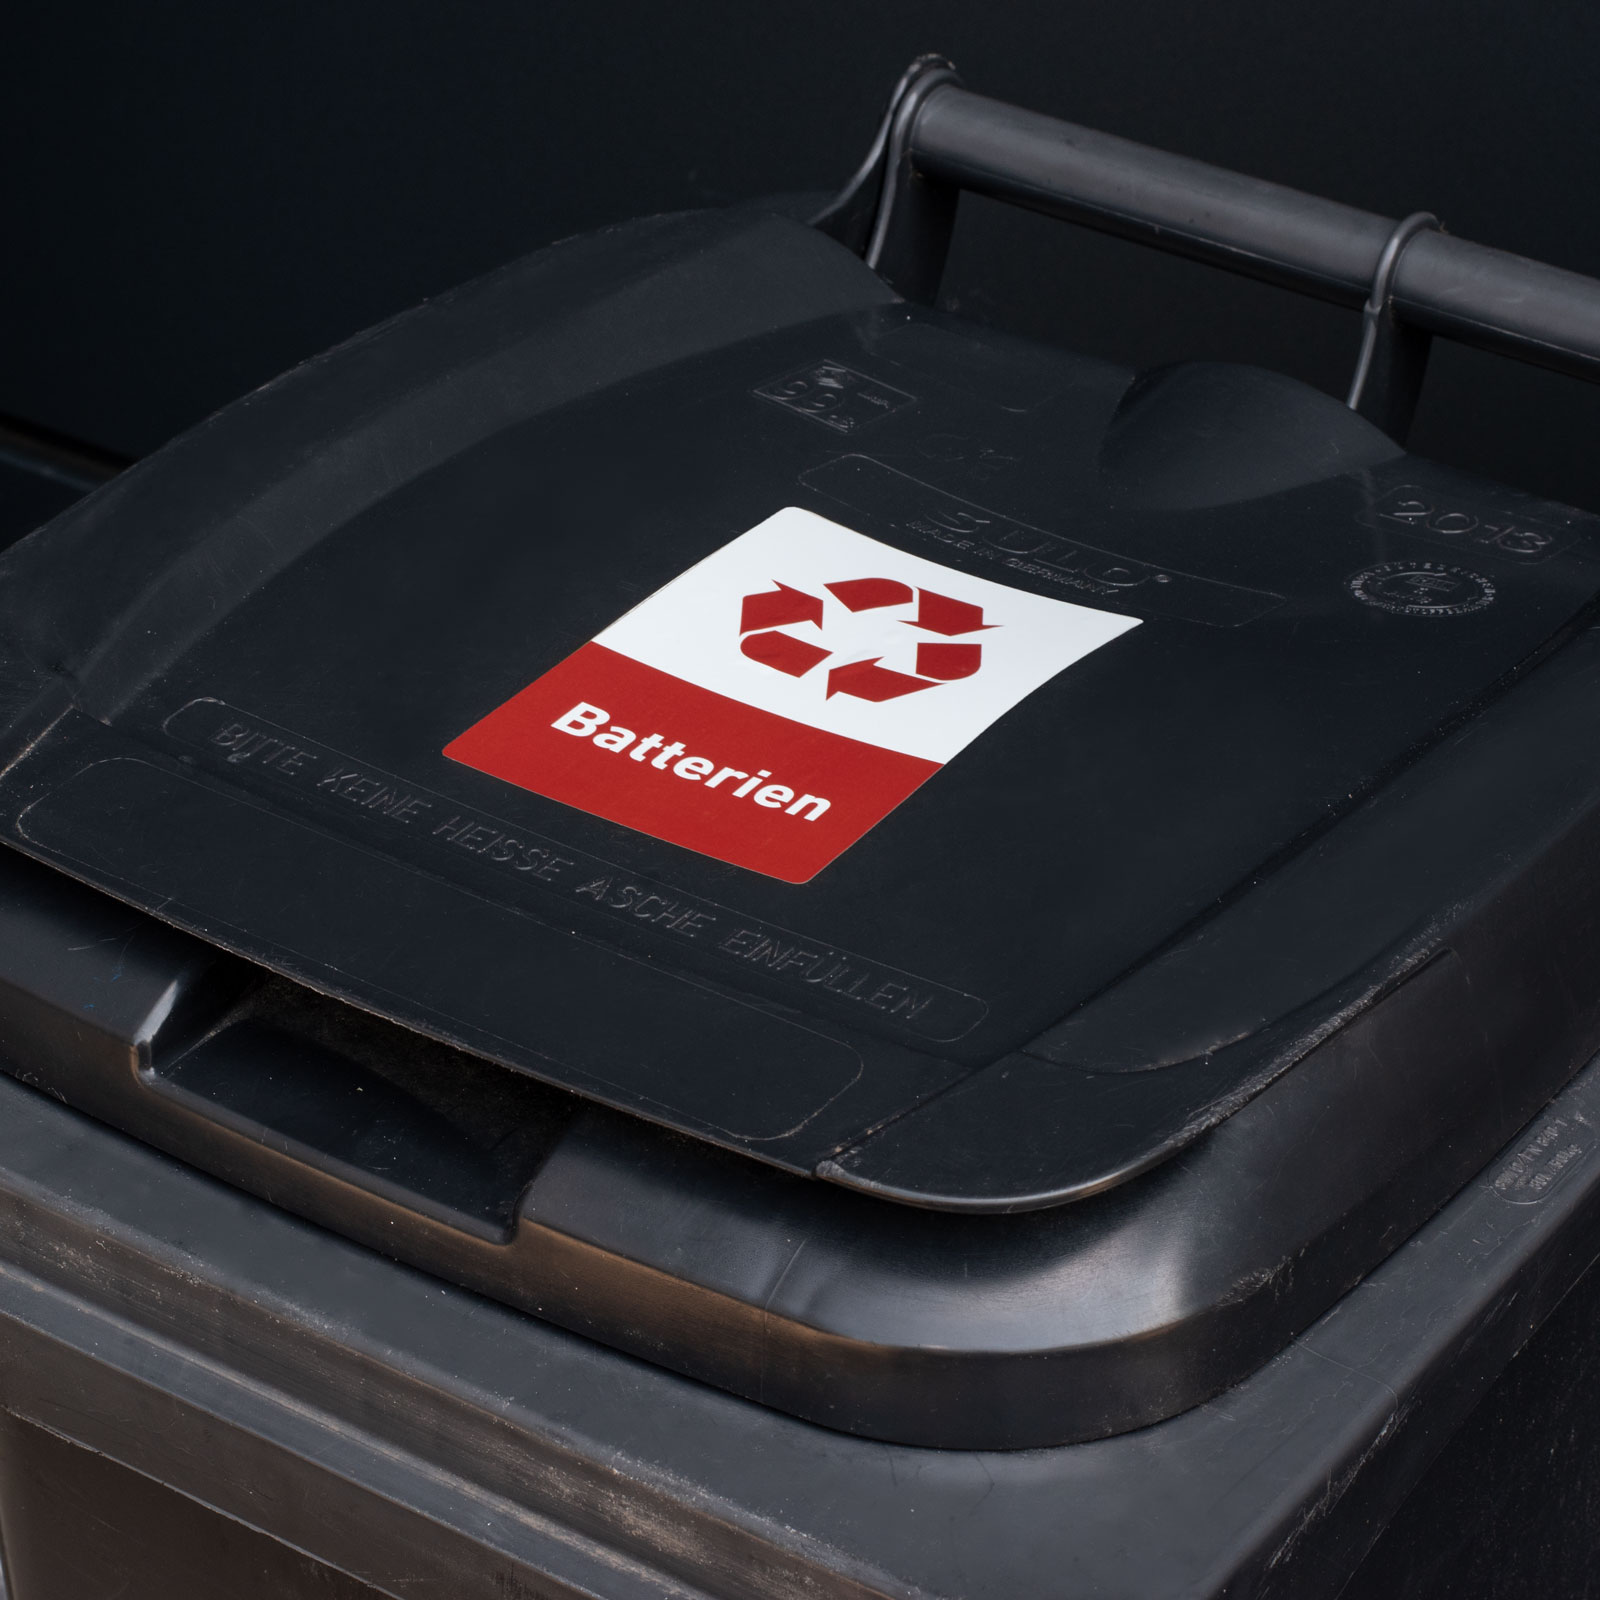 Recycling Aufkleber Batterien Mülltonnen Mülleimer